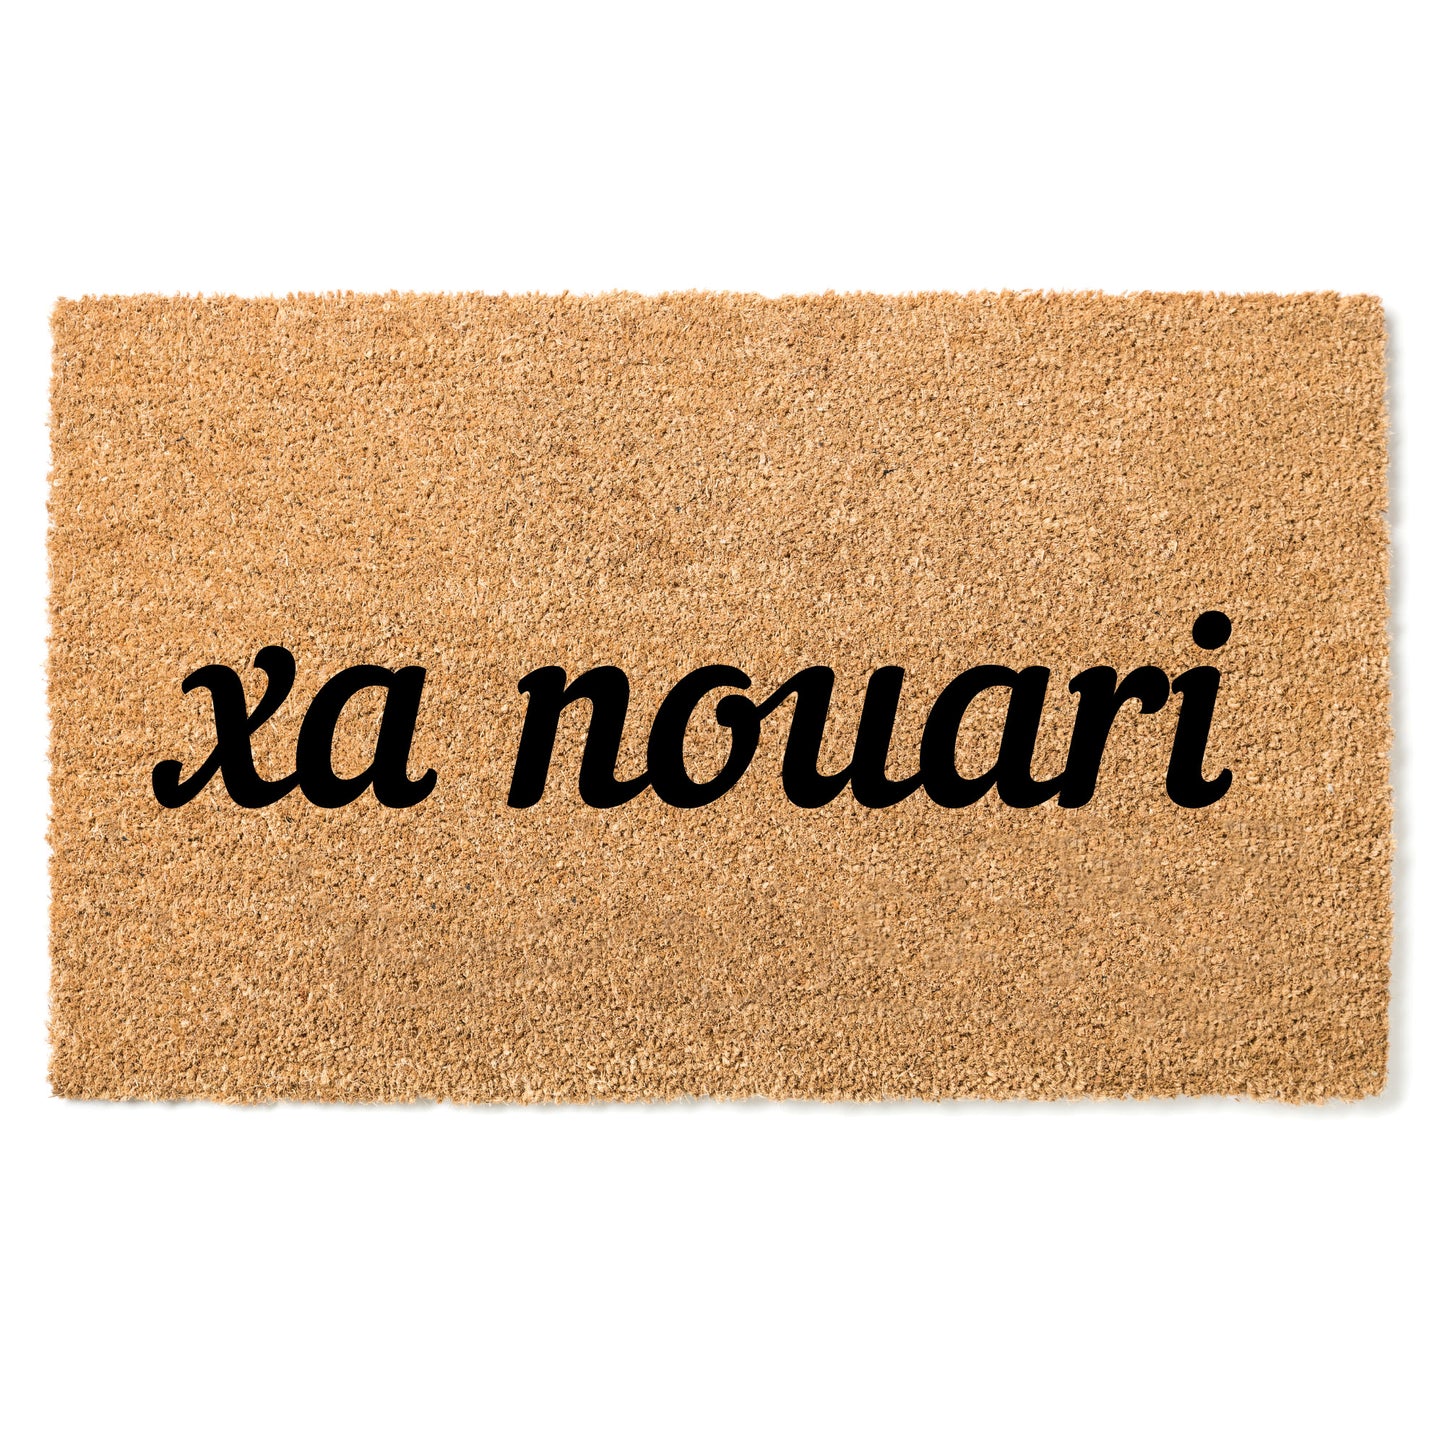 "Xa Nouari" door mat - "Welcome" in Soninke